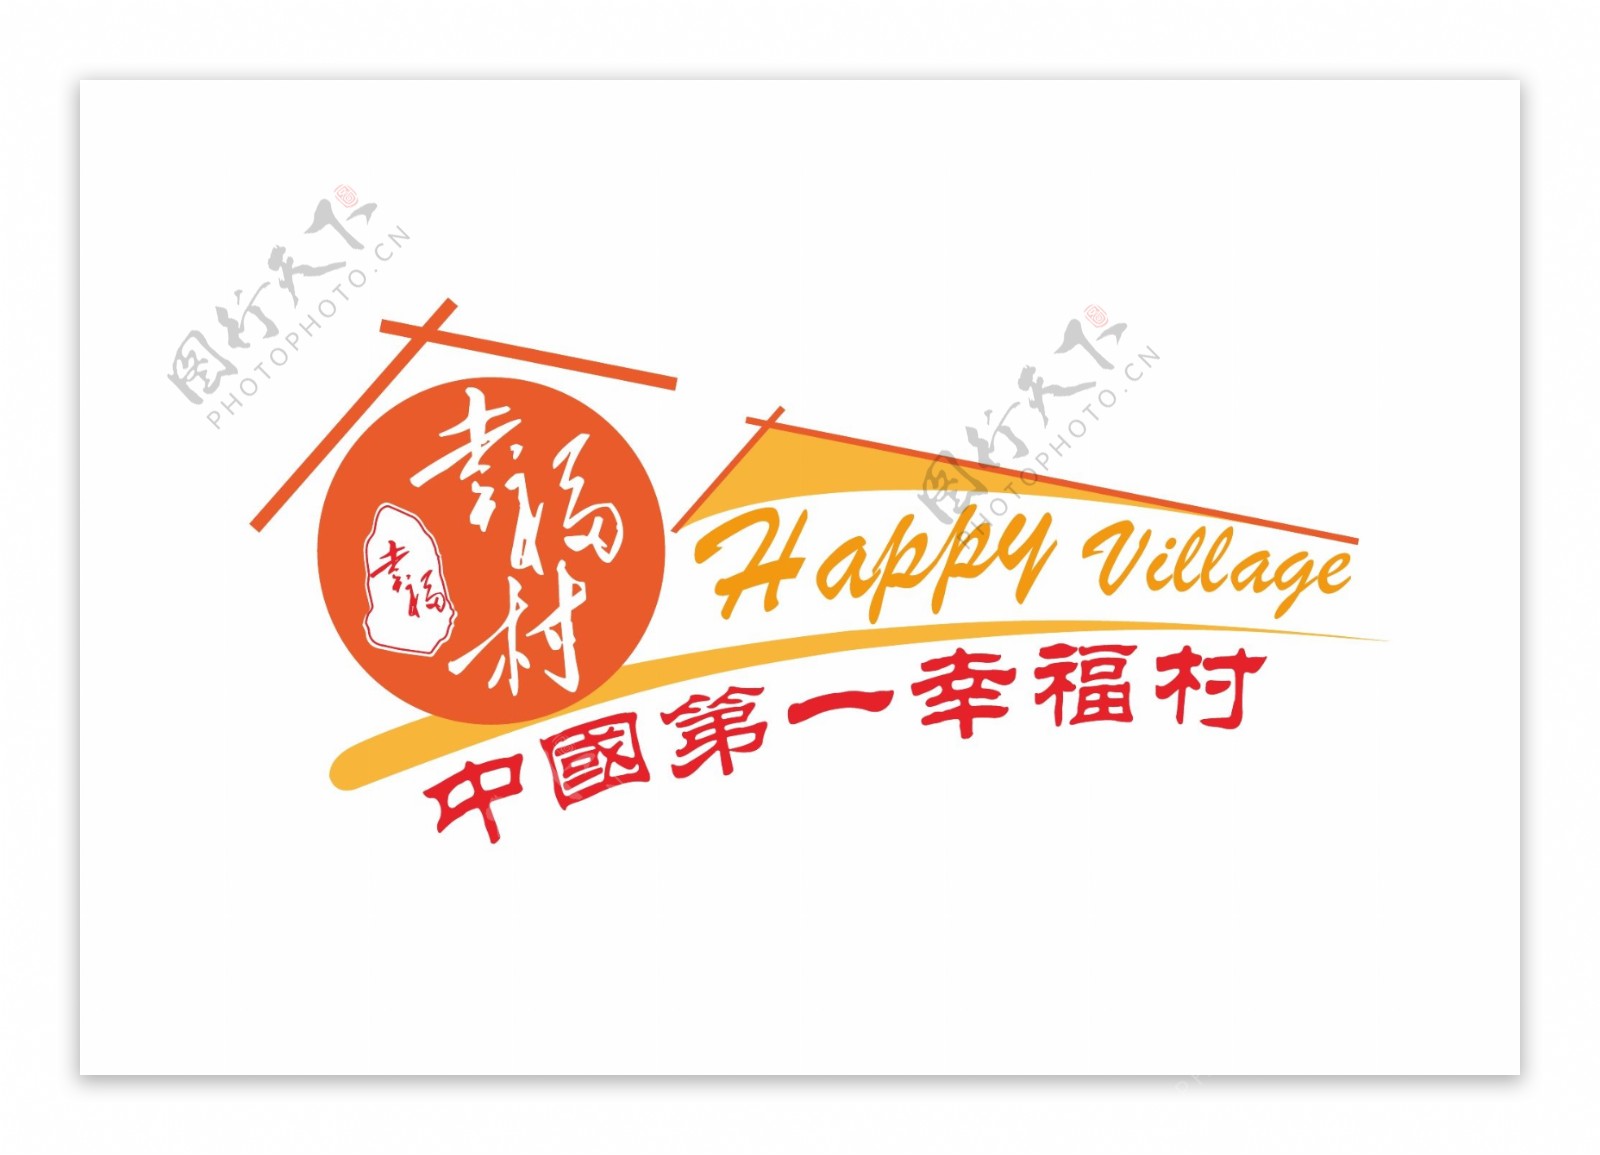 原创简约大气幸福村logo设计